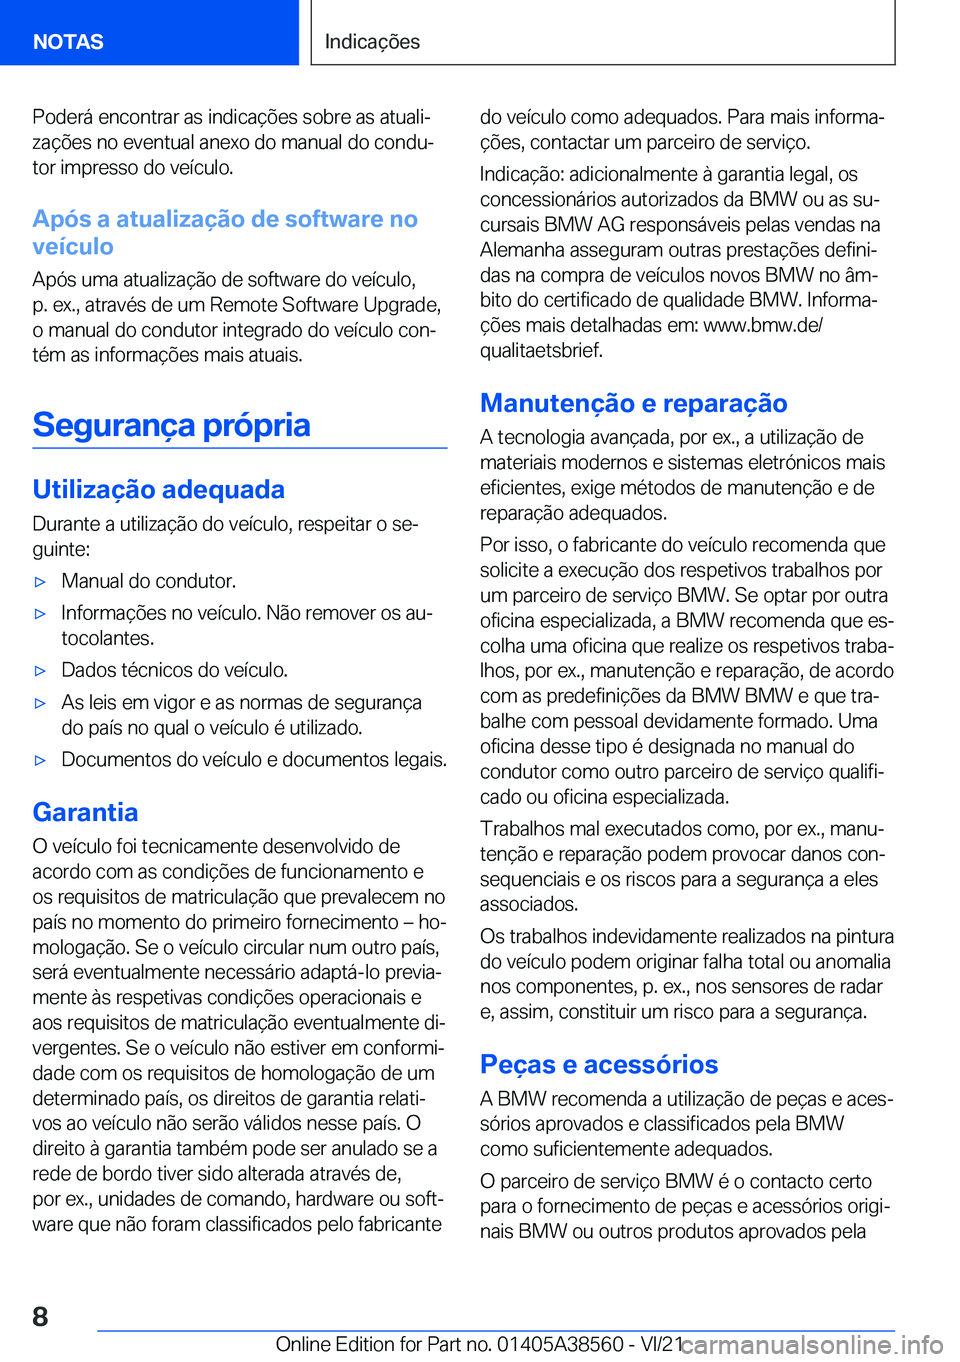 BMW X6 2022  Manual do condutor (in Portuguese) �P�o�d�e�r�á��e�n�c�o�n�t�r�a�r��a�s��i�n�d�i�c�a�